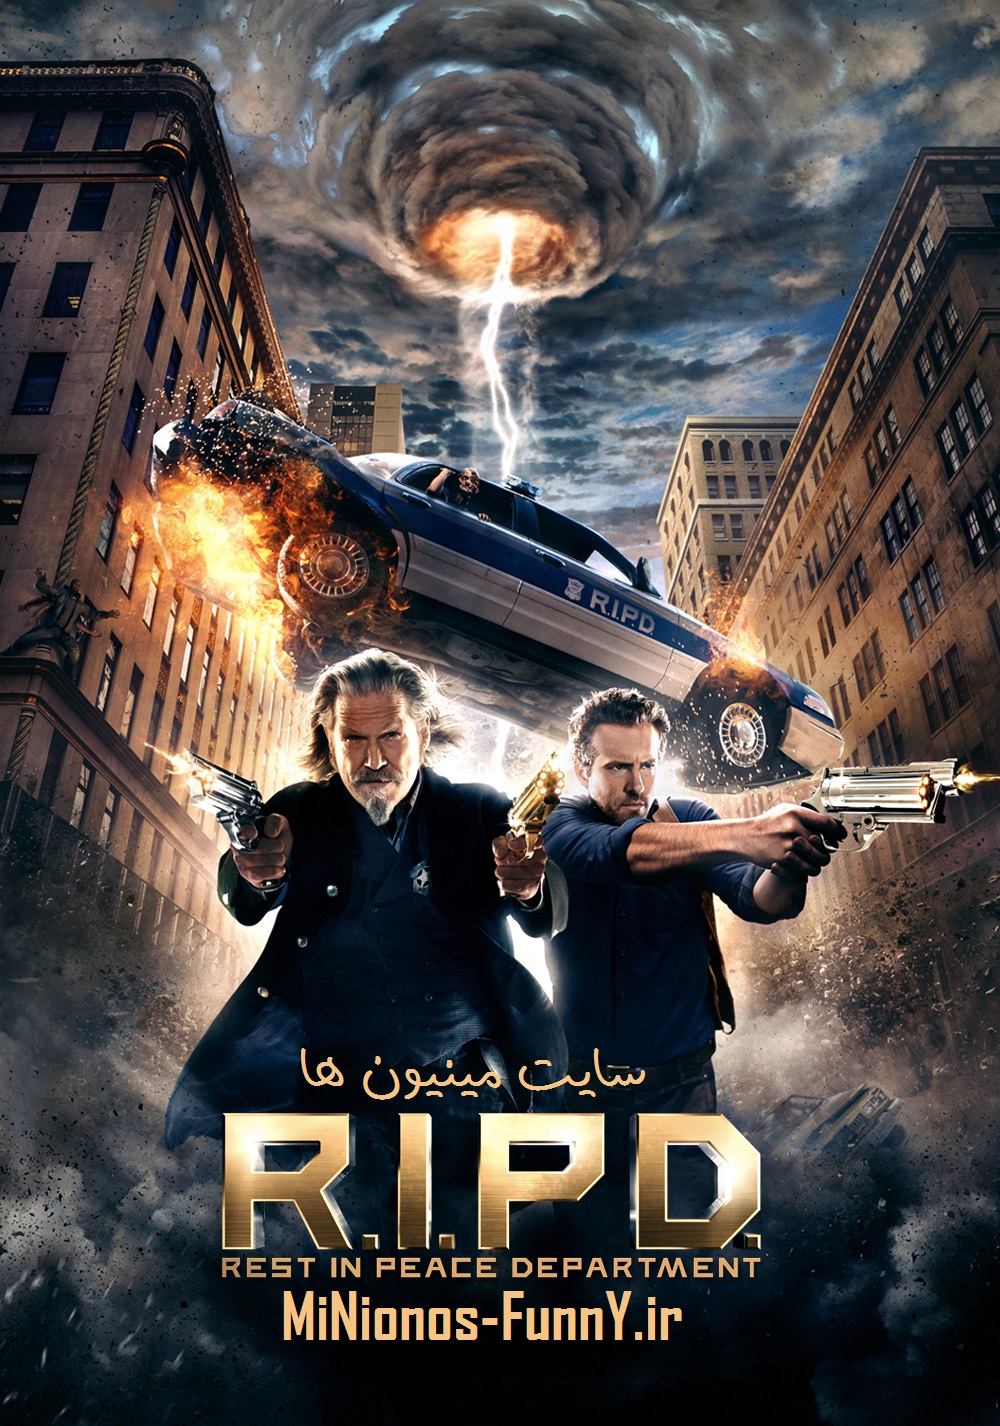 دانلود فیلم R.I.P.D 2013 با لینک مستقیم سایت مینیون ها